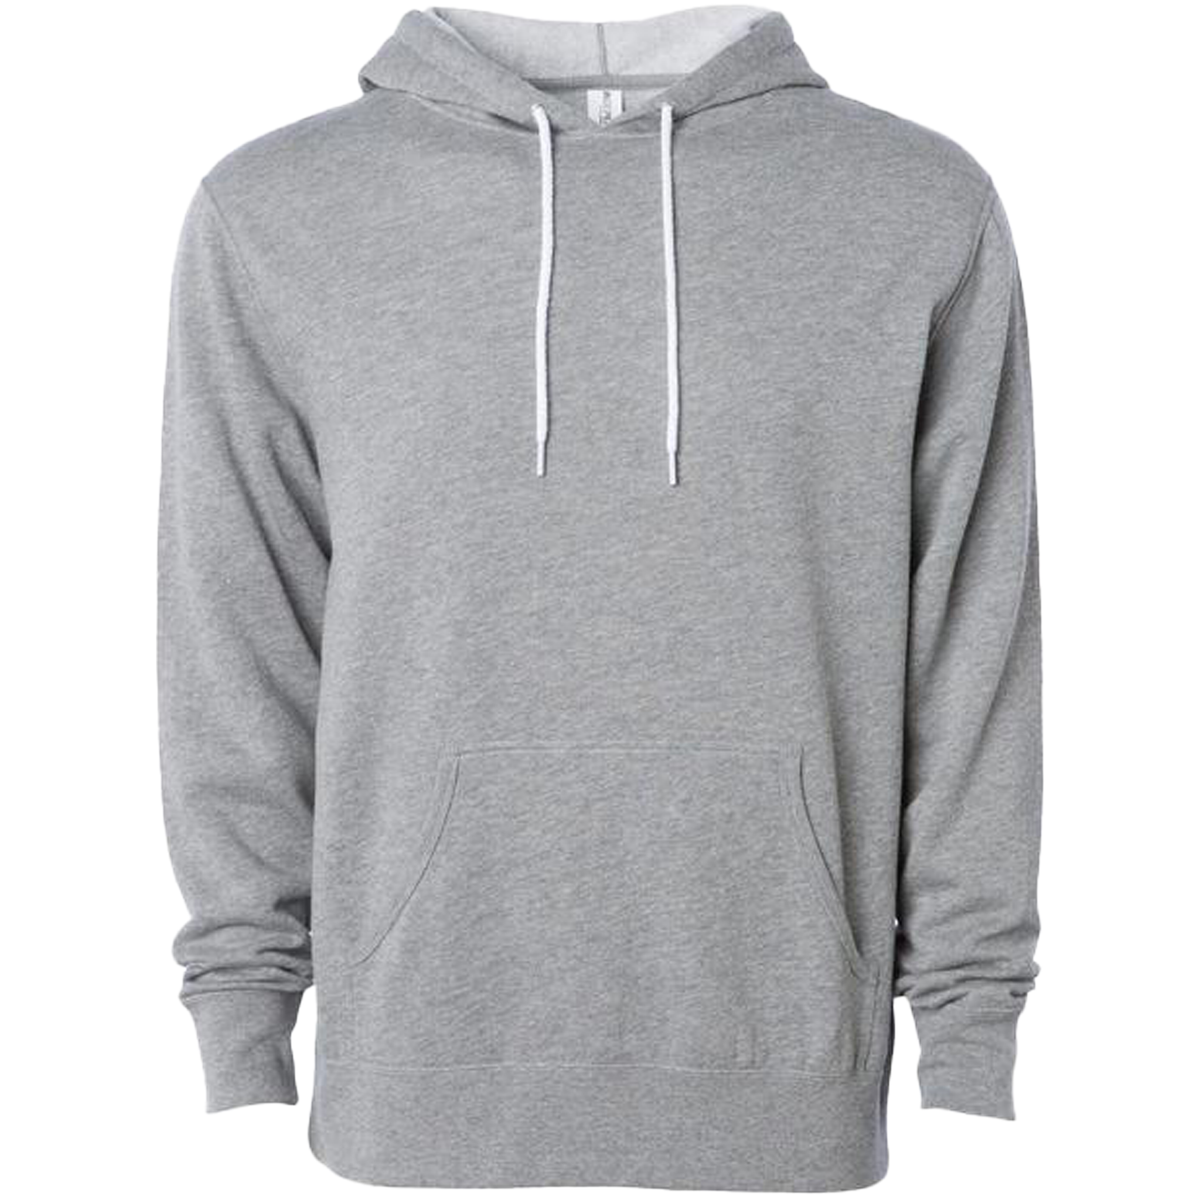 AFX90UN - Unisex Pullover Hooded Sweatshirt